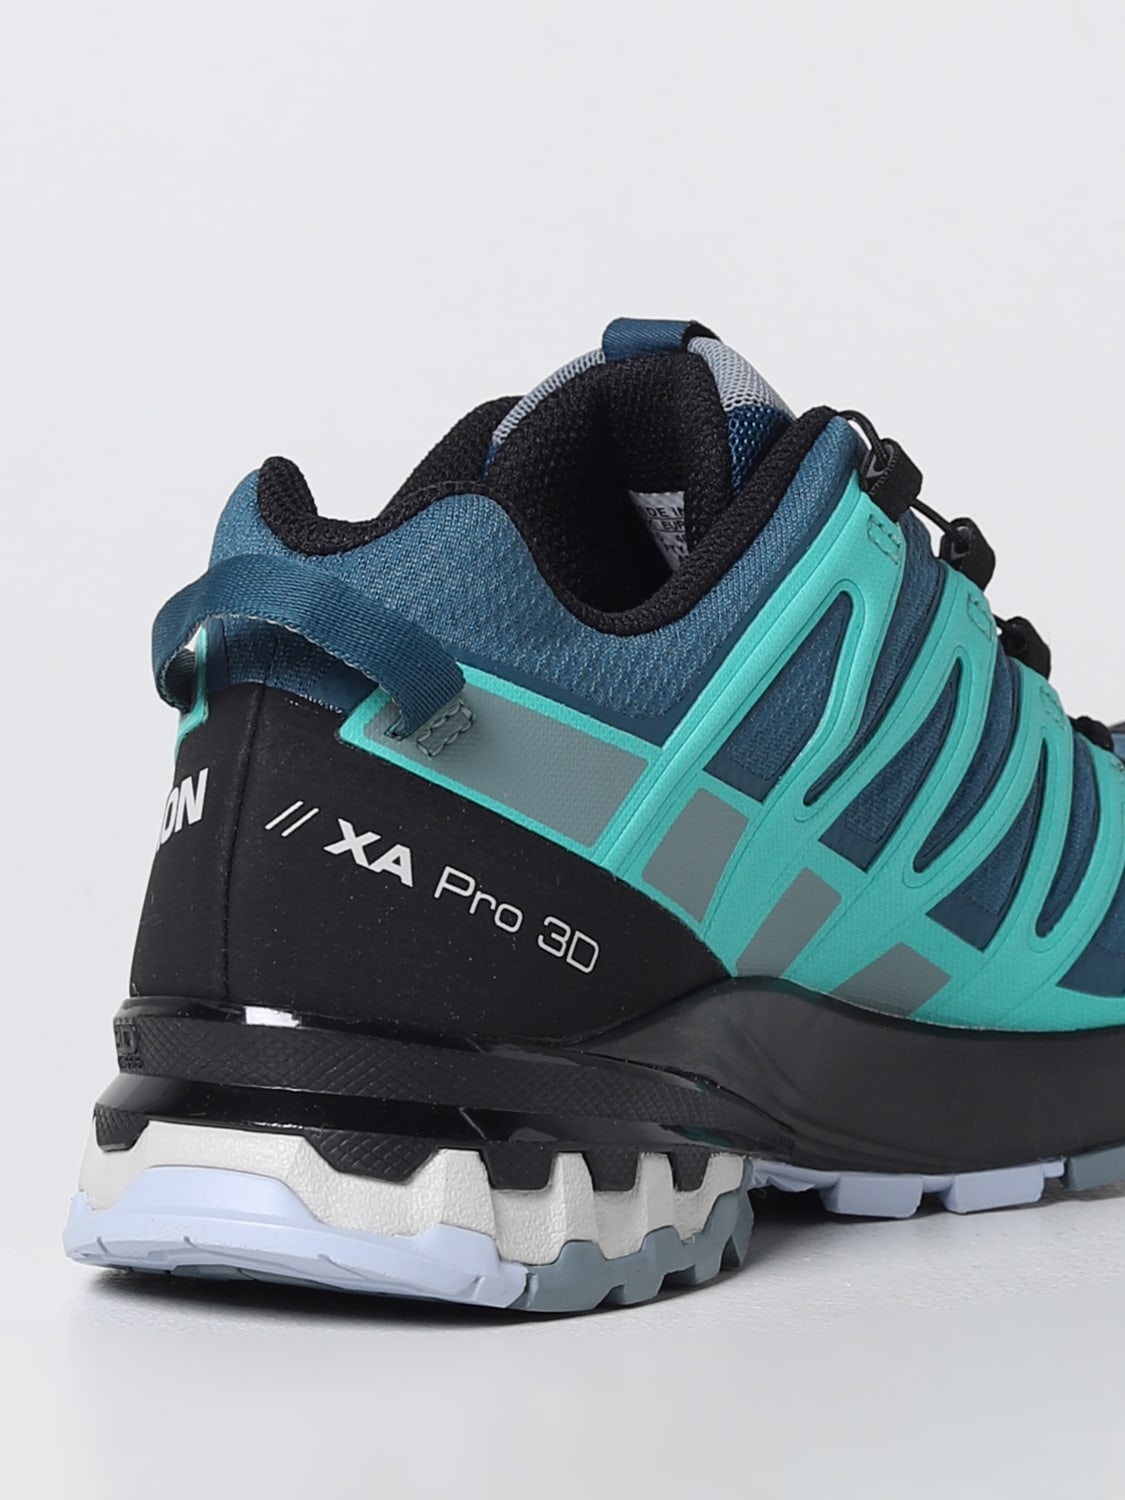 Salomon XA Pro 3D V8 Trail-Running Shoes - Women's